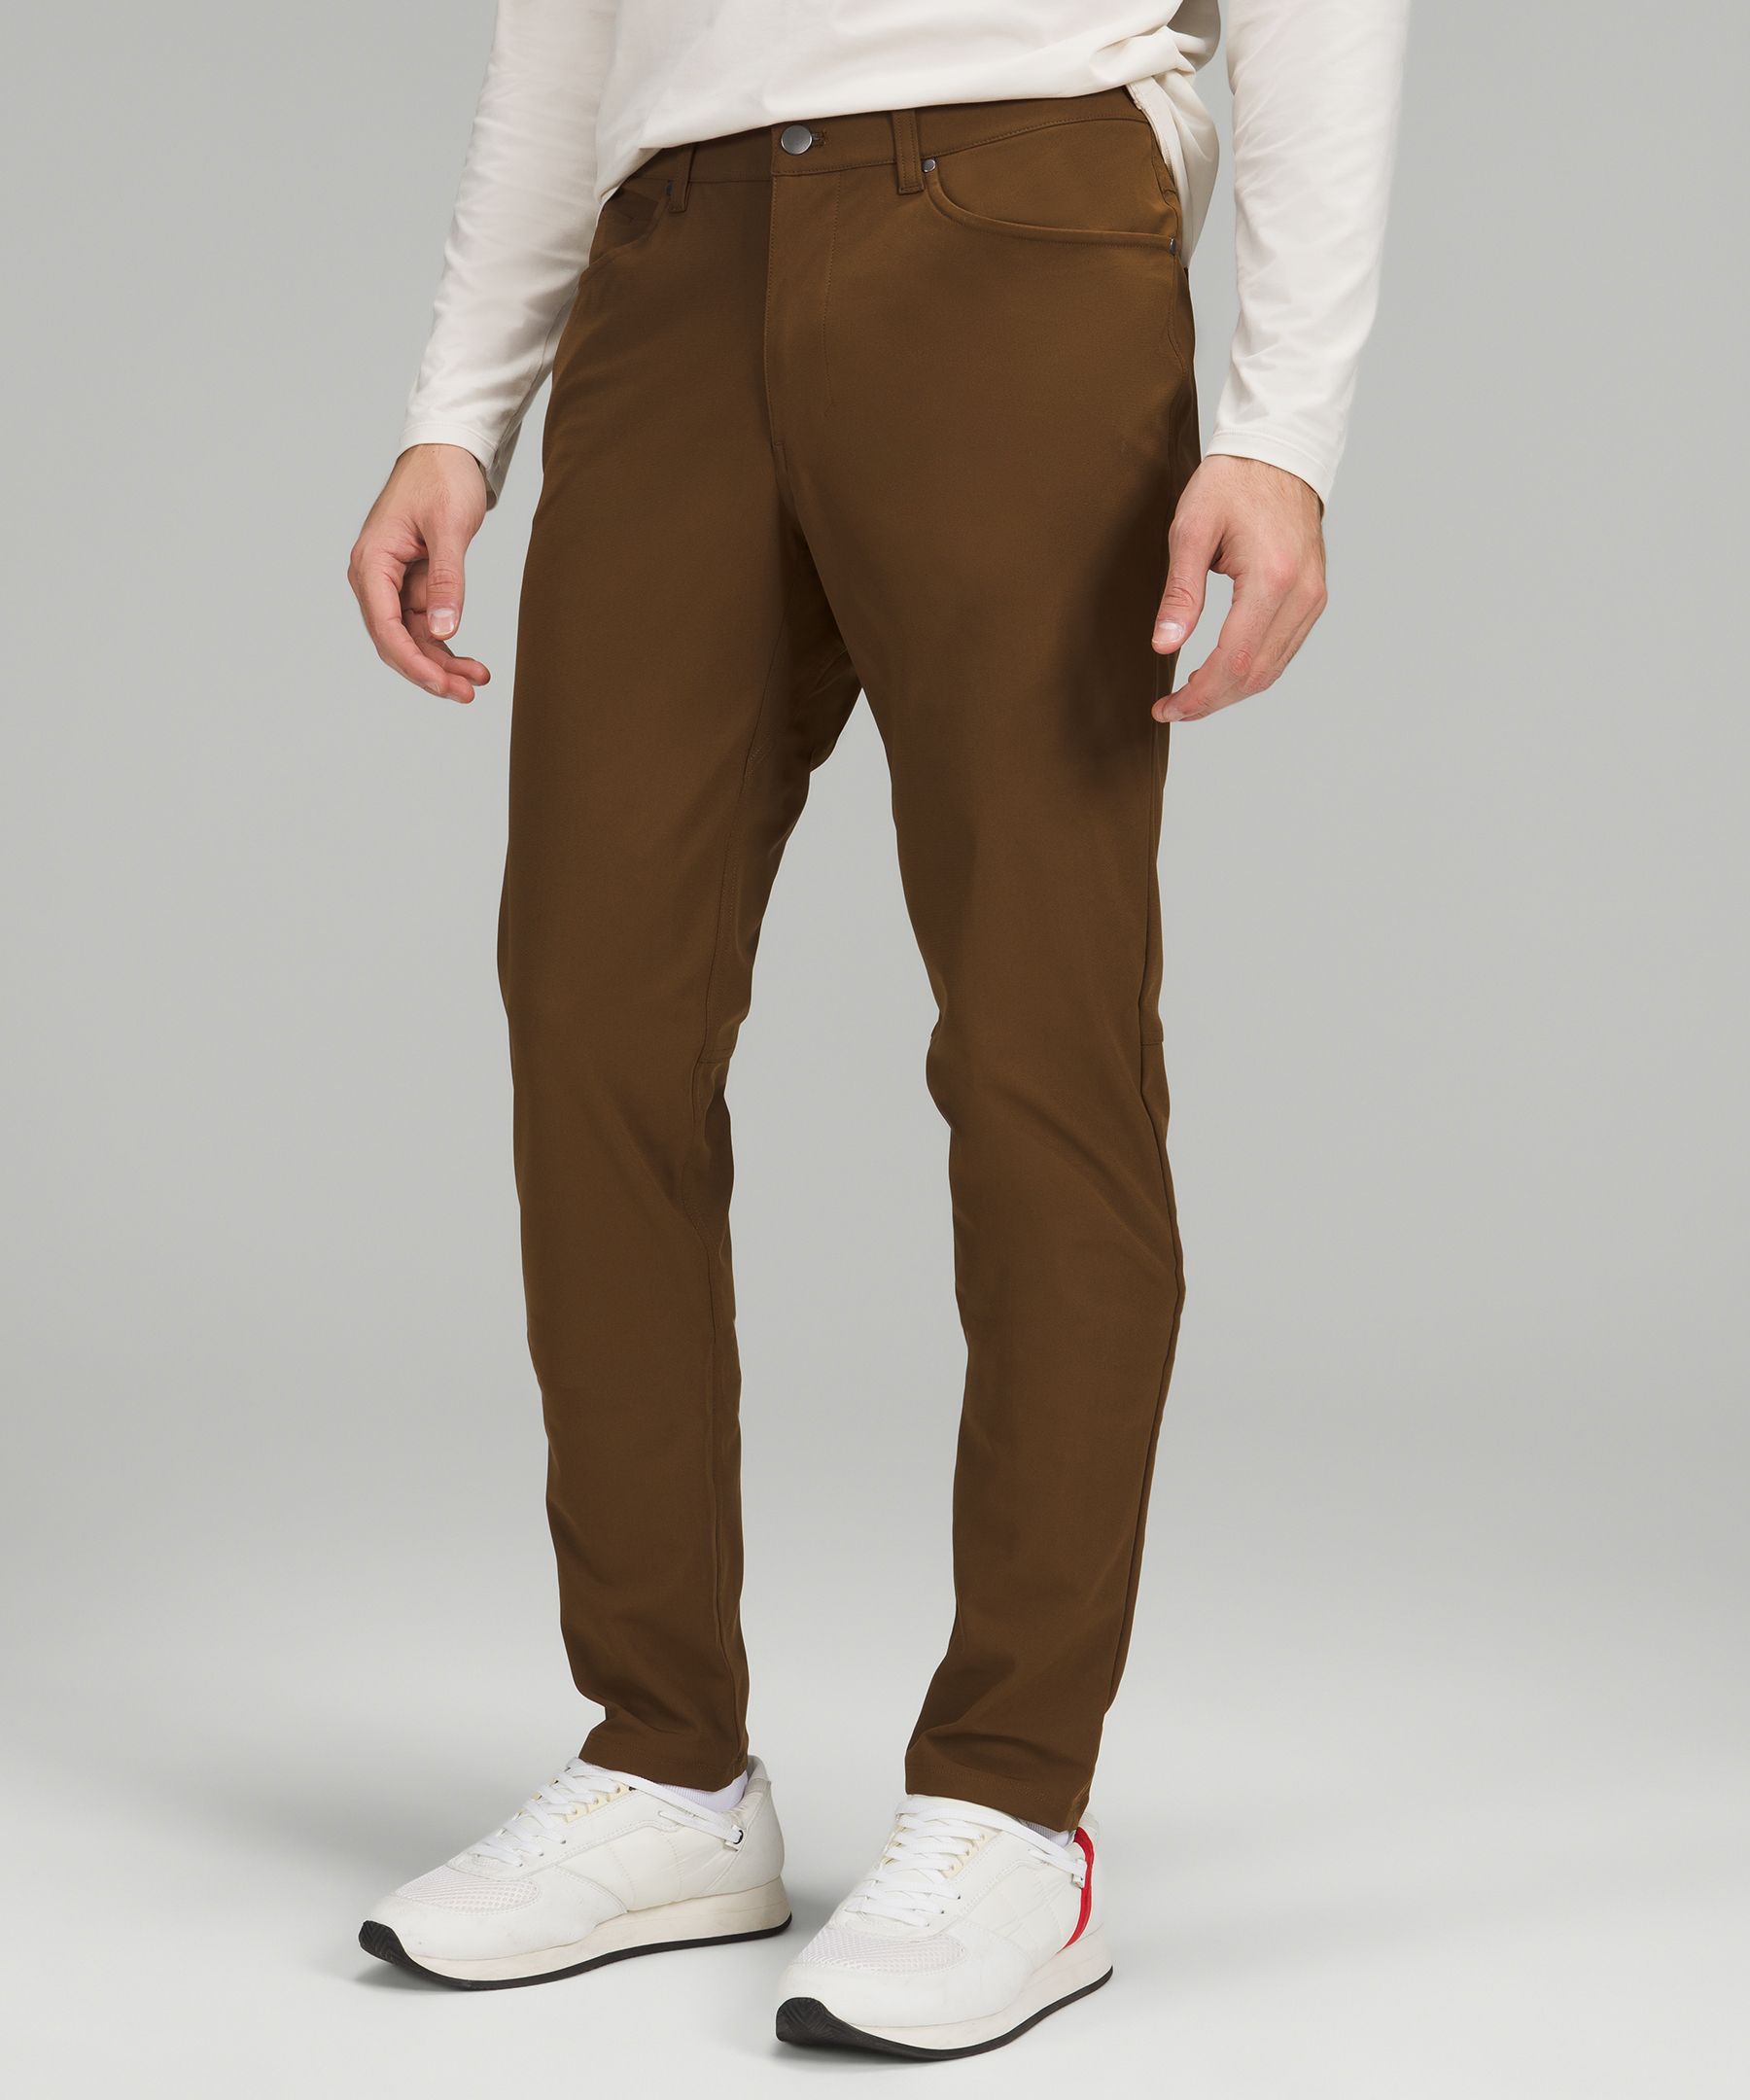 ABC Classic-Fit 5 Pocket Pant 28L *Warpstreme, Men's Trousers, lululemon